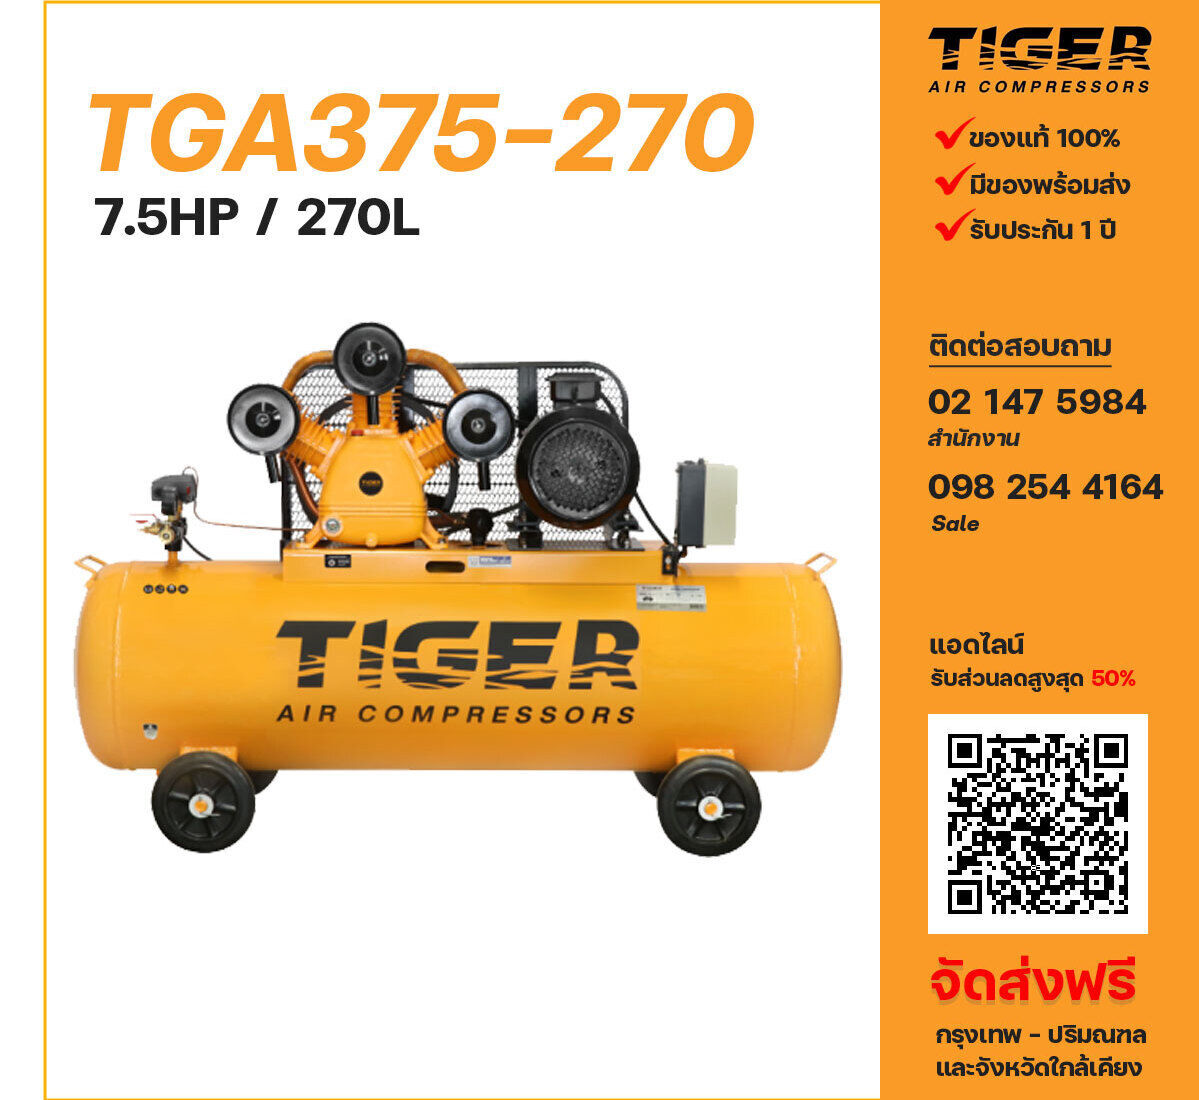 ปั๊มลมไทเกอร์ TIGER TGA375-270 380V ปั๊มลมลูกสูบ ขนาด 3 สูบ 7.5 แรงม้า 270 ลิตร TIGER พร้อมมอเตอร์ ไฟ 380V ส่งฟรี กรุงเทพฯ-ปริมณฑล รับประกัน 1 ปี